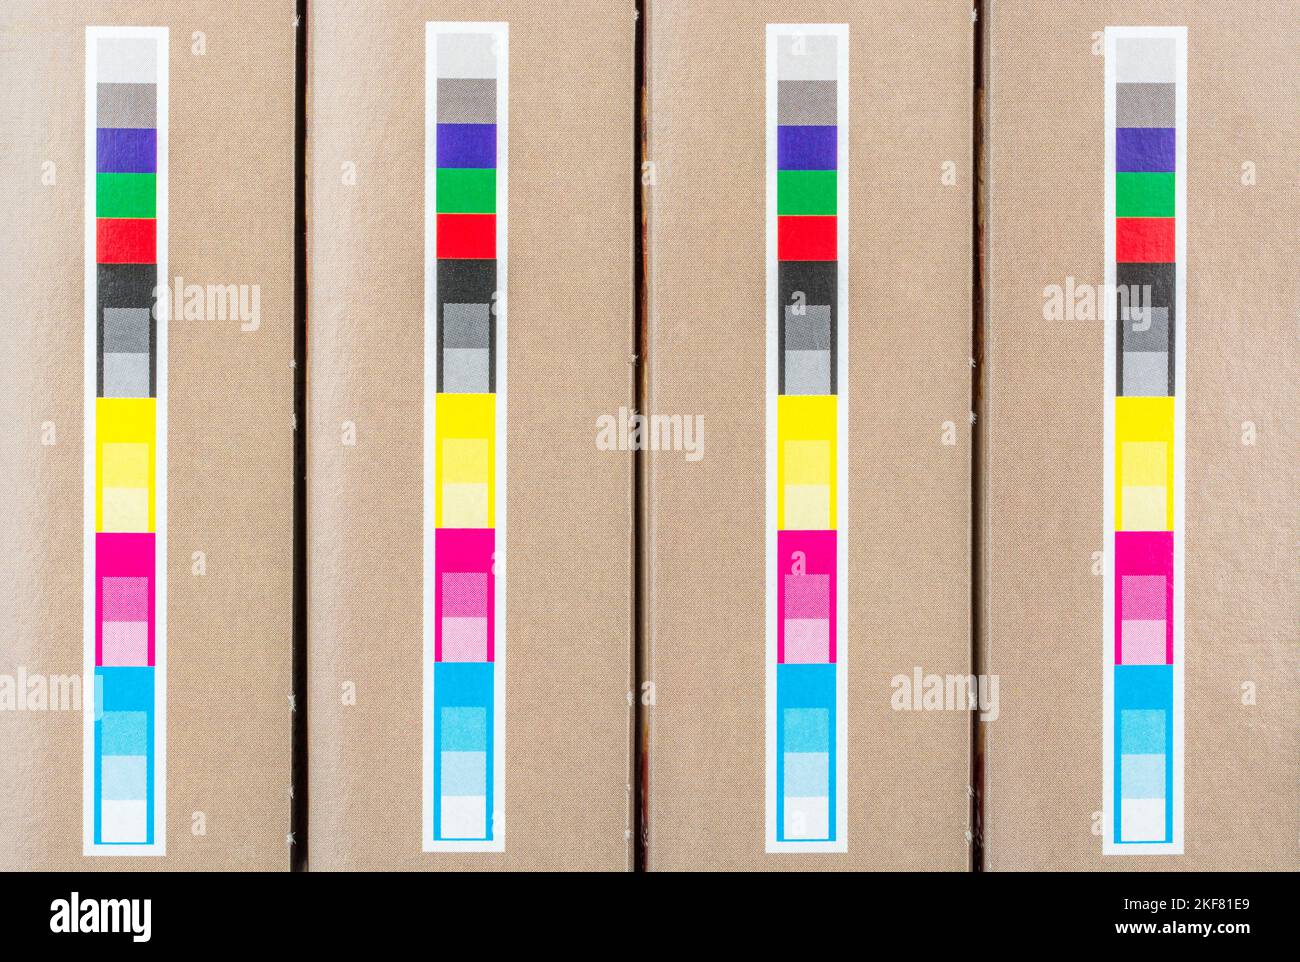 Vollfarben- und CMCMCMCMDA-Farbregistrierungsstreifen auf der Unterseite einer ASDA-eigenen Salbei- und Zwiebelfüllbox. Wird zur Überprüfung der Qualität und Farbausrichtung verwendet. Stockfoto